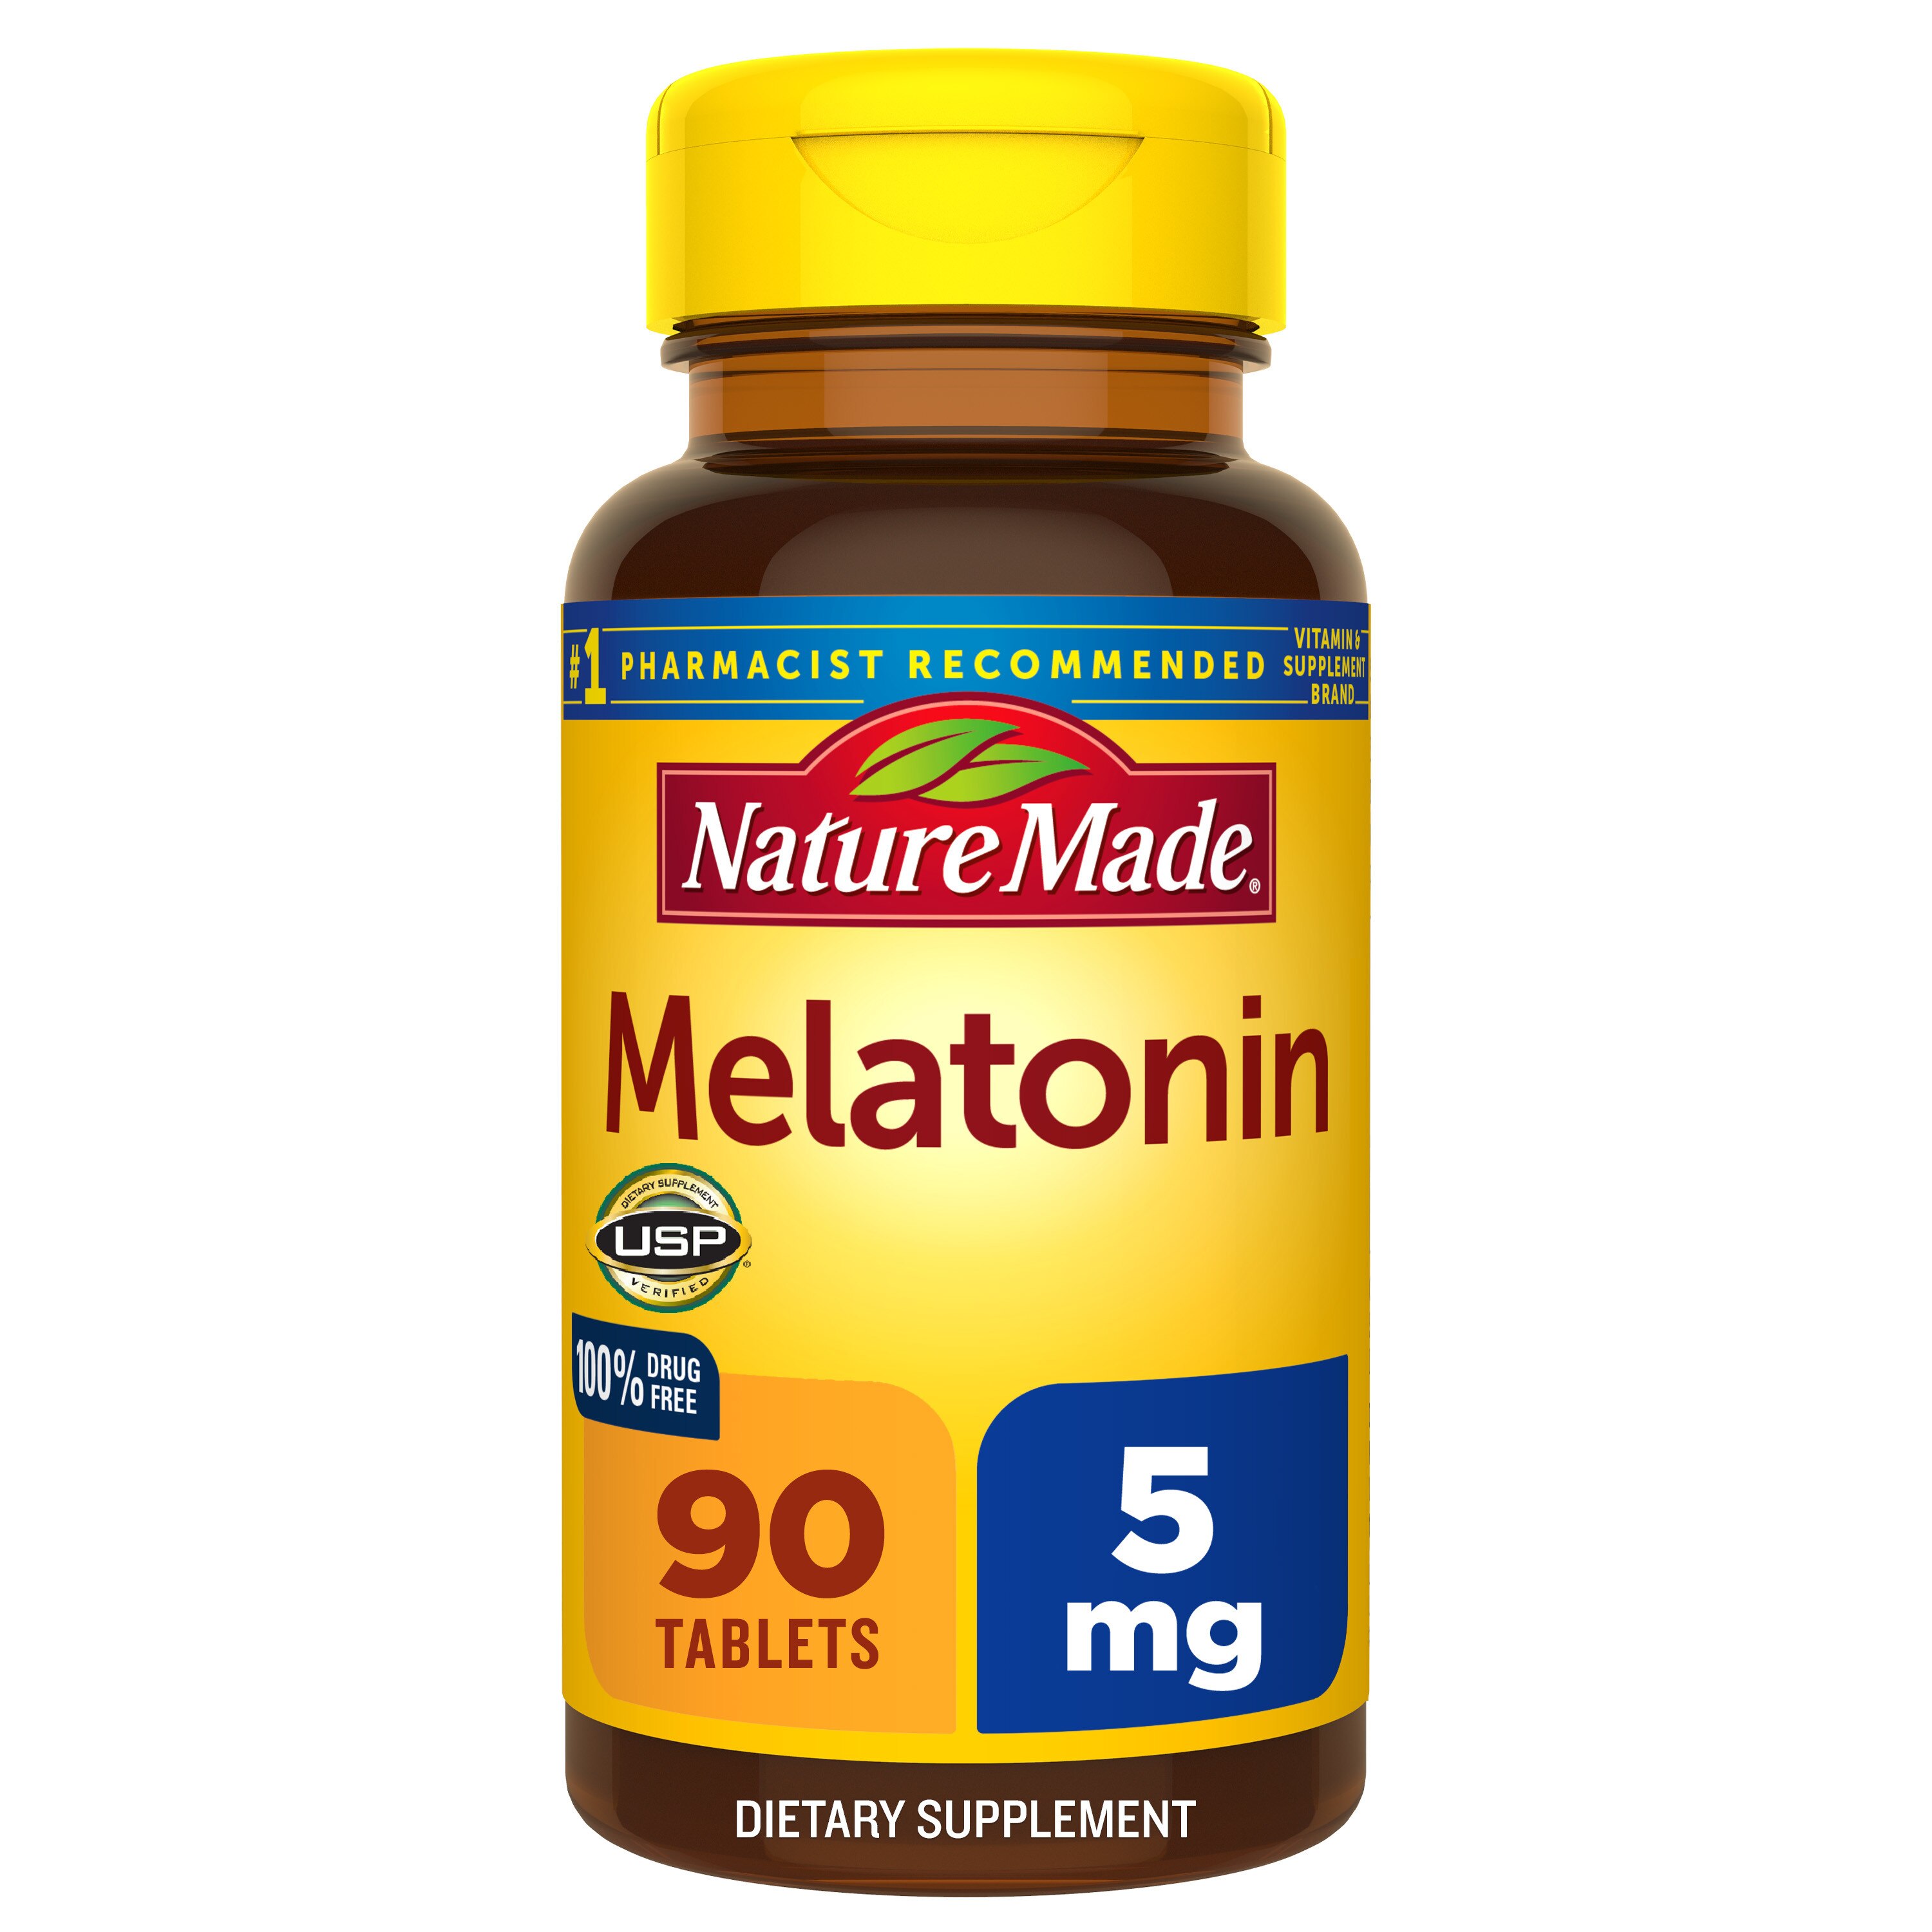 Nature Made Melatonin 5mg Tablets, 90 CT